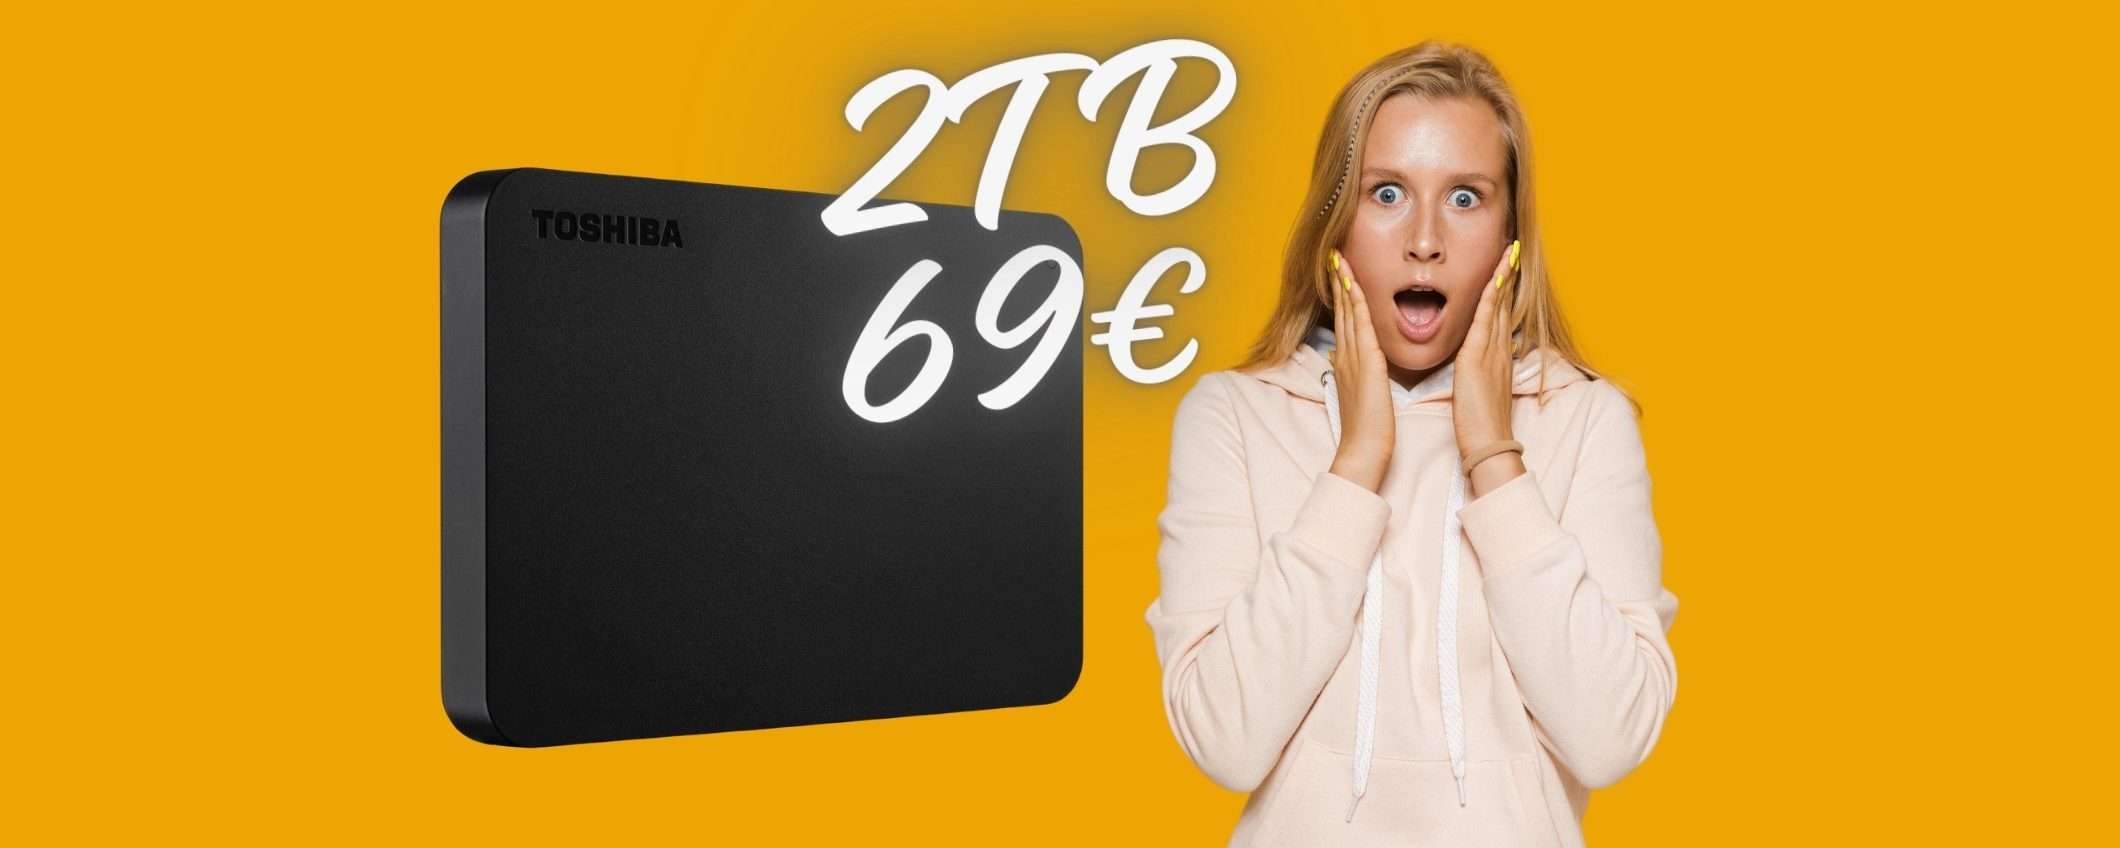 Hard Disk Toshiba da 2TB a 69€: ERRORE PREZZO o PAZZIA eBay?